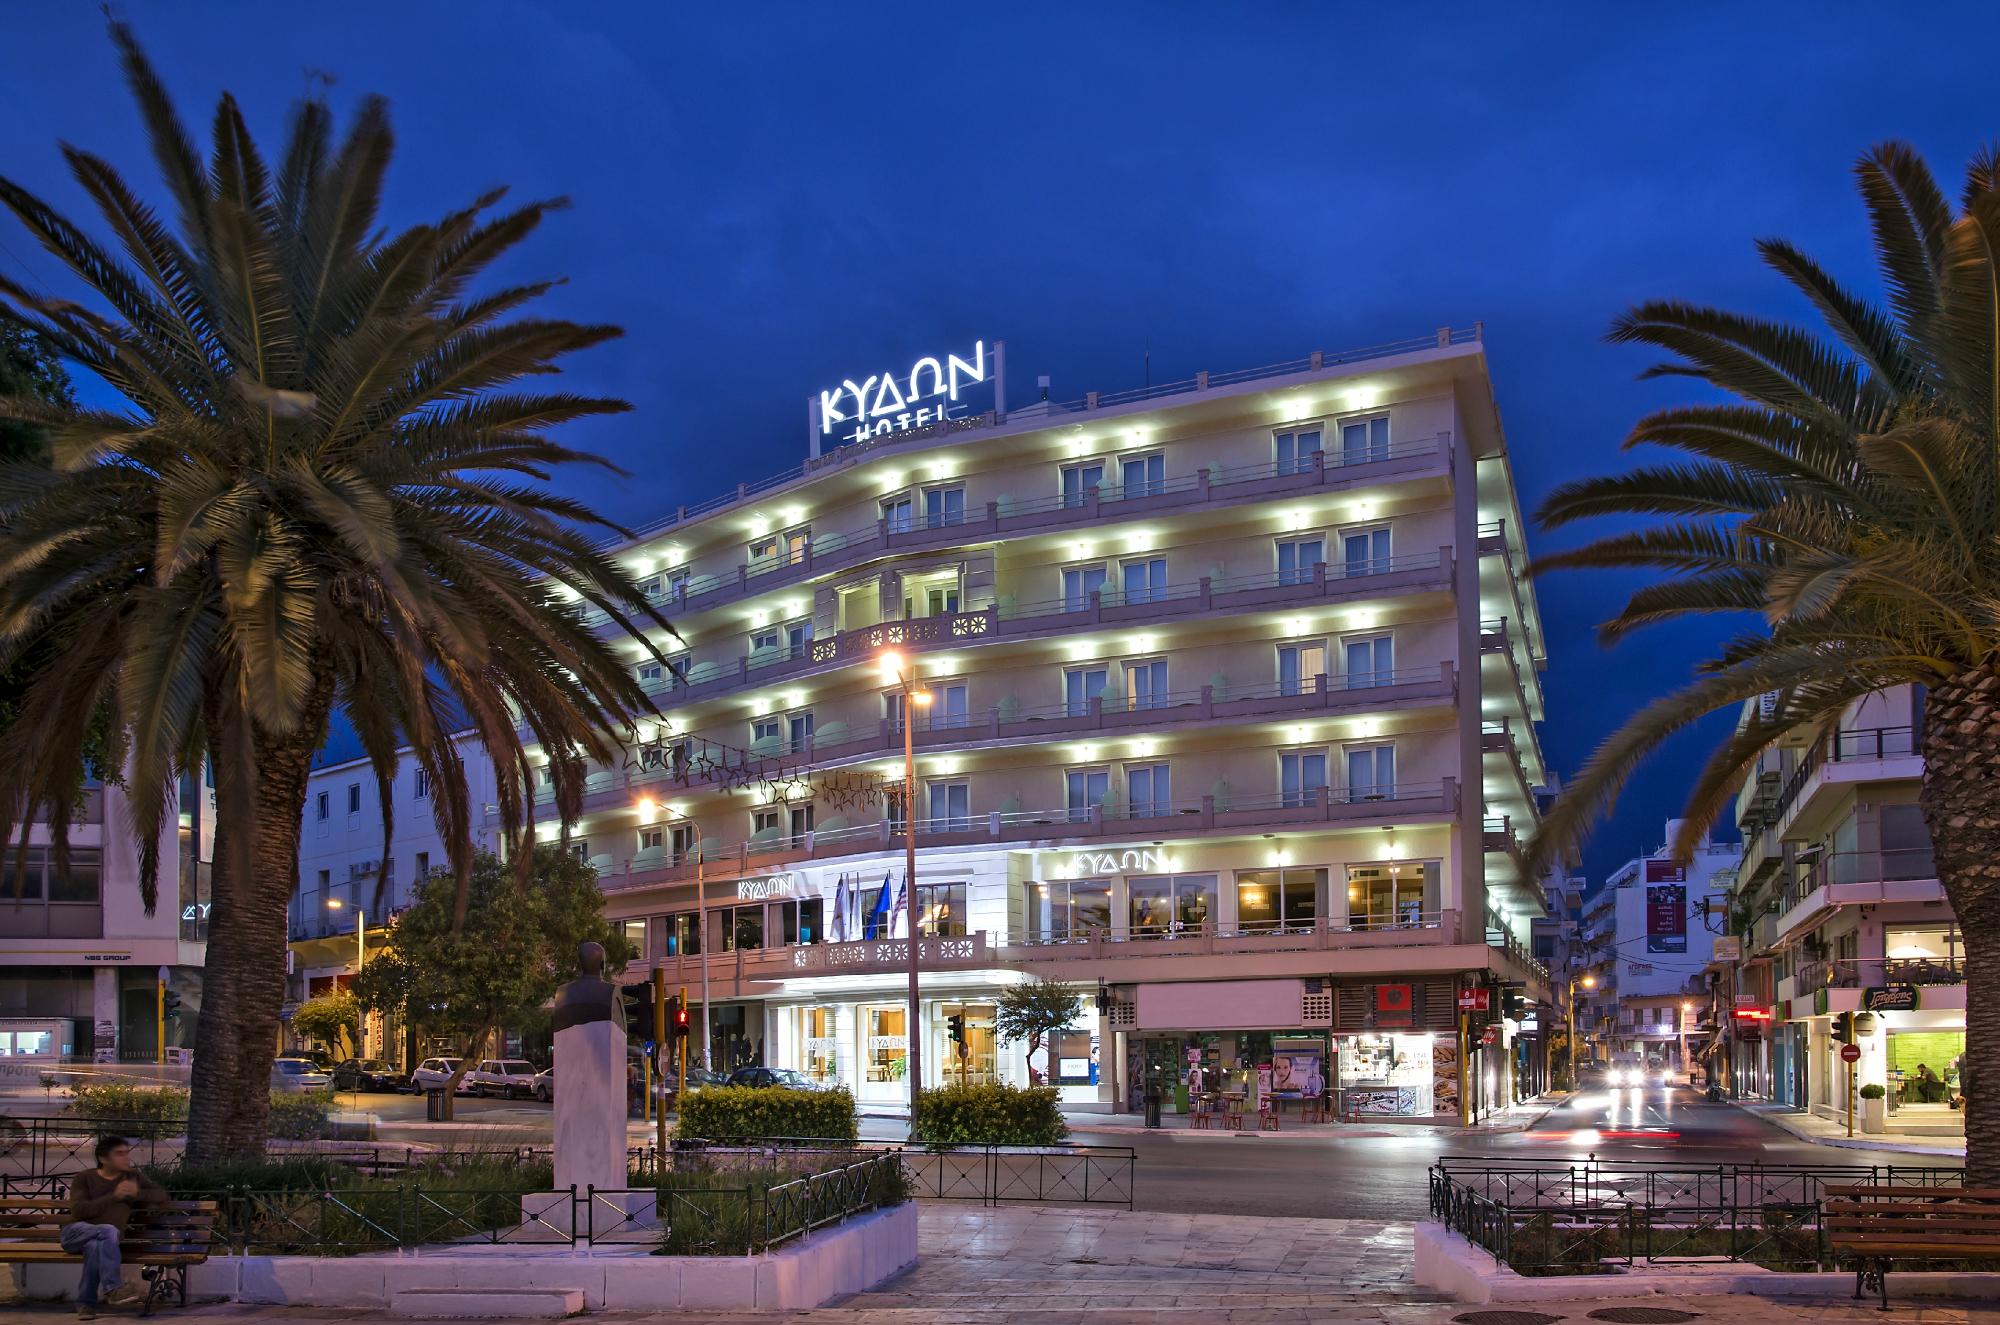 Hotel photo 1 of Kydon, The Heart City Hotel.